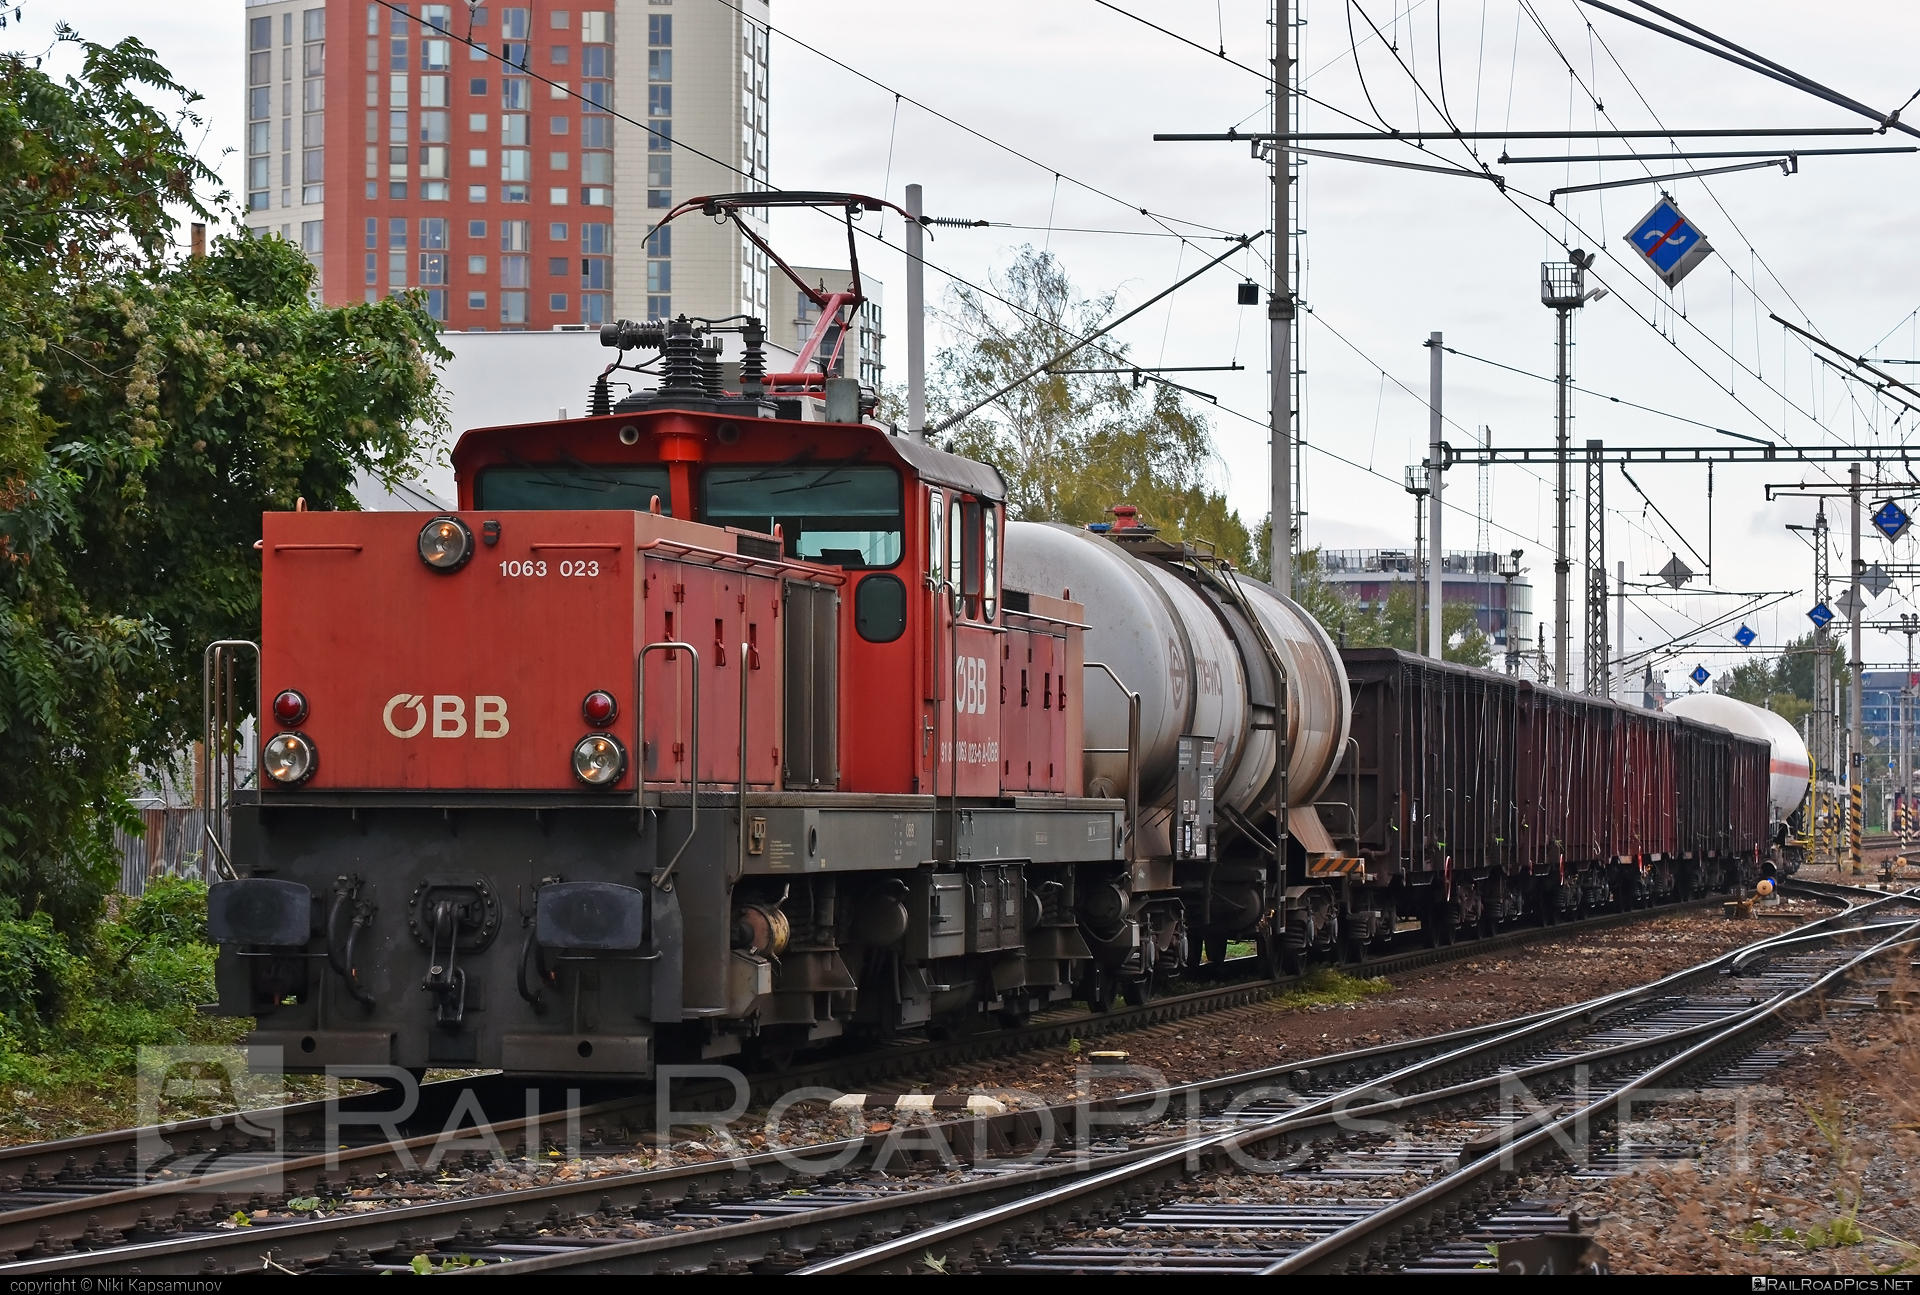 SGP ÖBB Class 1063 - 1063 023 operated by Rail Cargo Austria AG #obb #obb1063 #obbclass1063 #openwagon #osterreichischebundesbahnen #sgp #sgp1063 #simmeringgrazpauker